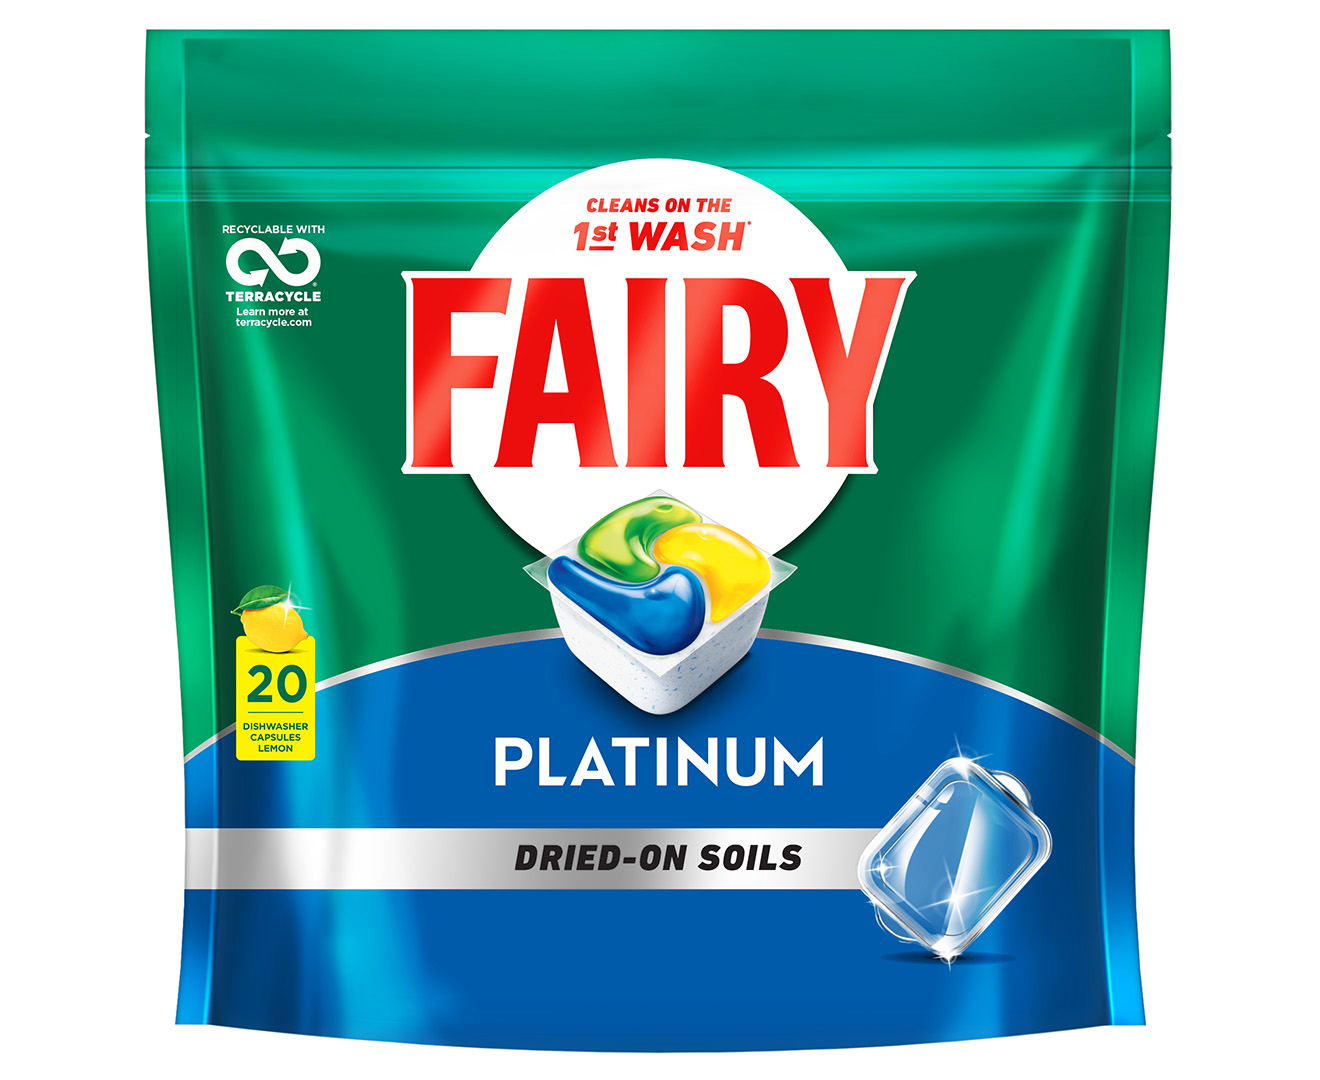 Free Ariel Pods and Fairy Platinum Plus